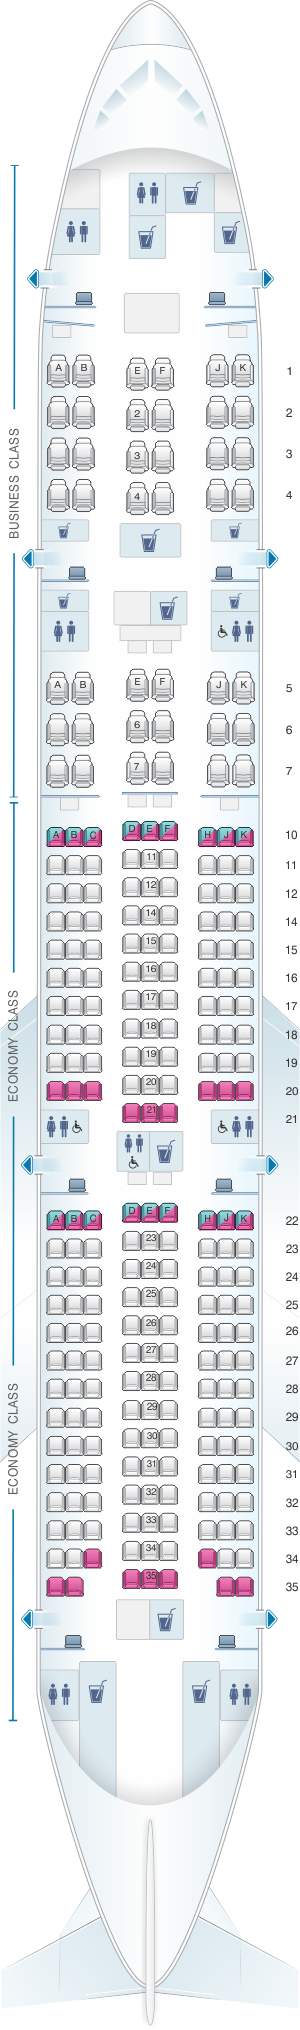 Seat map for Qatar Airways Boeing B777 200LR 259pax